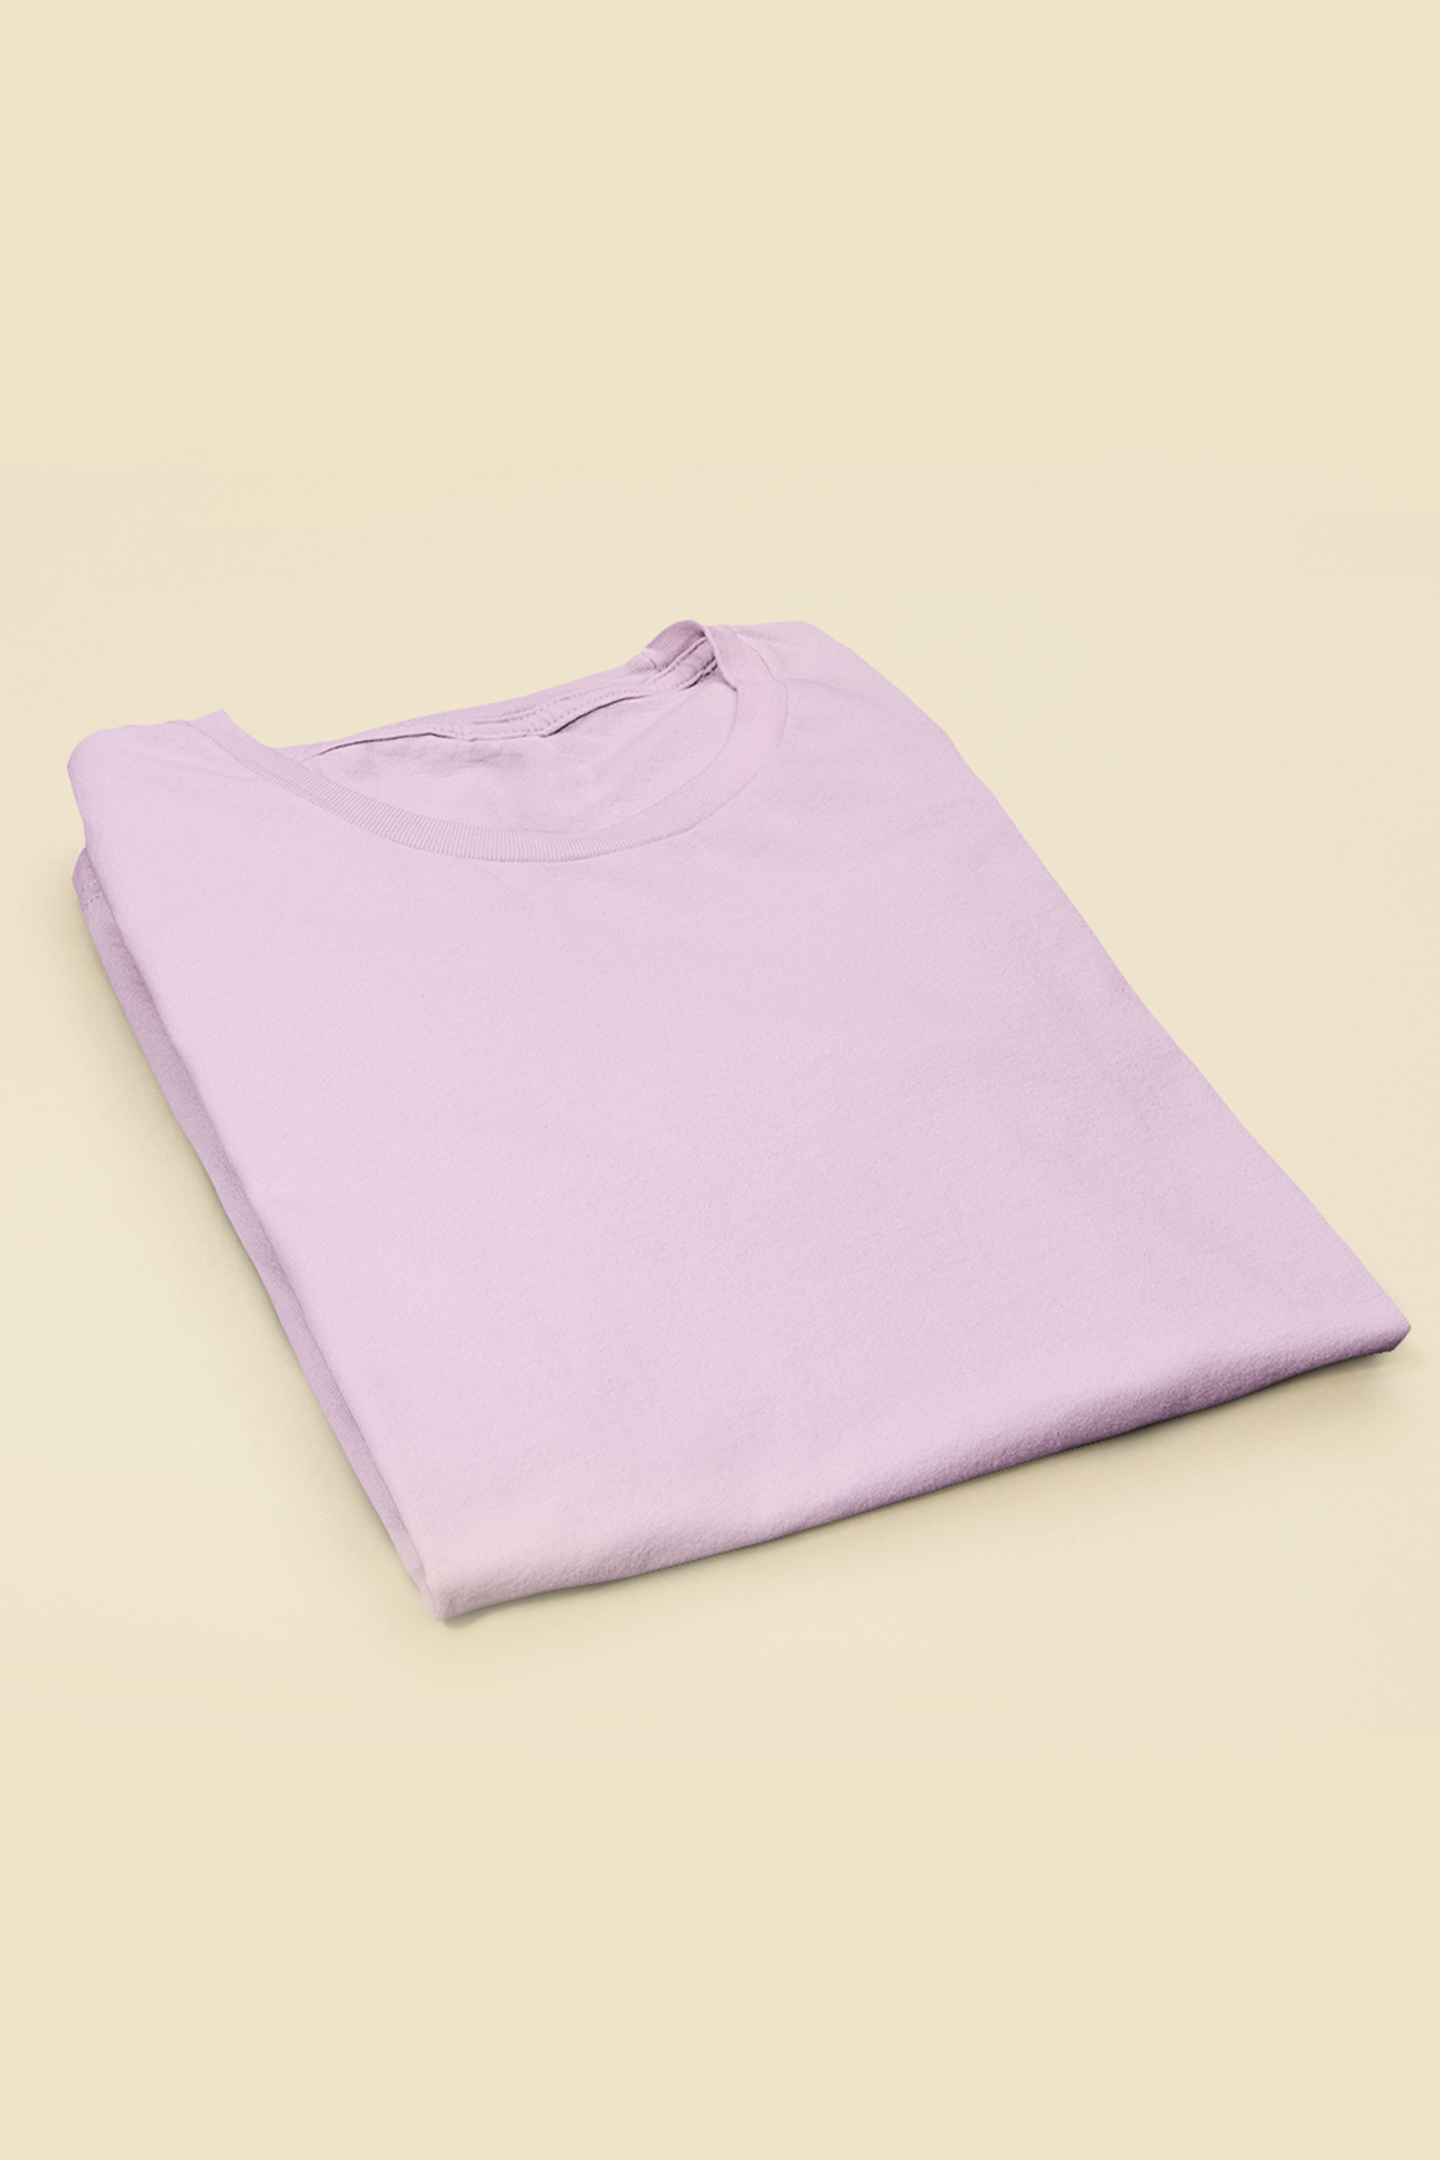 Oversized T-shirt - Light Purple Plain T-Shirt